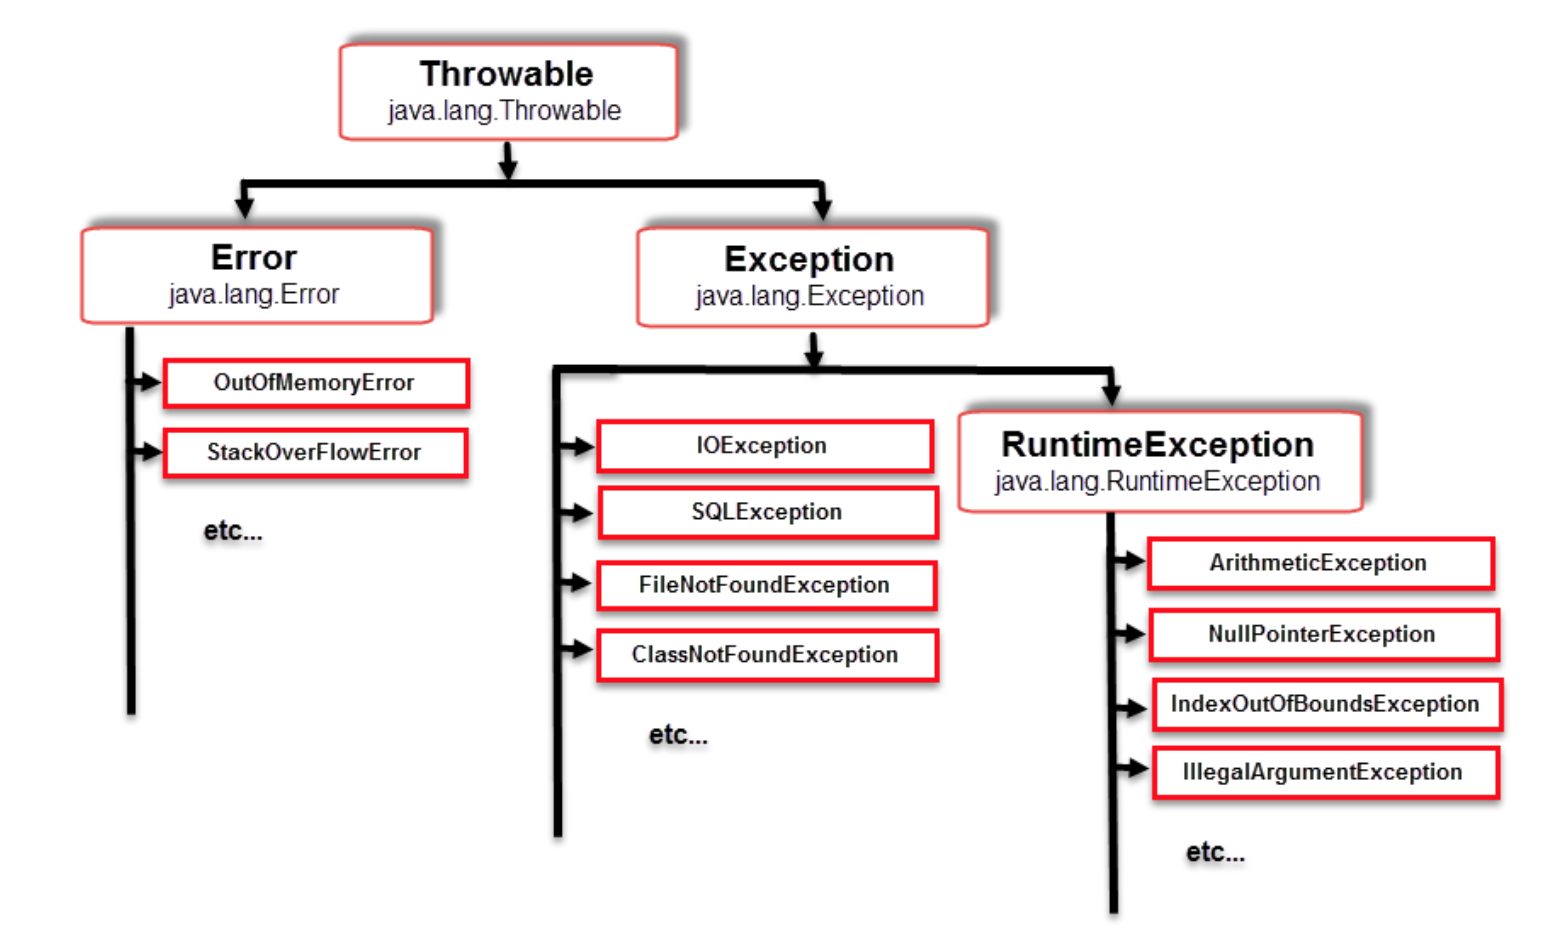 Java lang runtime exception. Иерархия наследования исключений java. Структура исключений java. Таблица исключений java. Дерево исключений java.